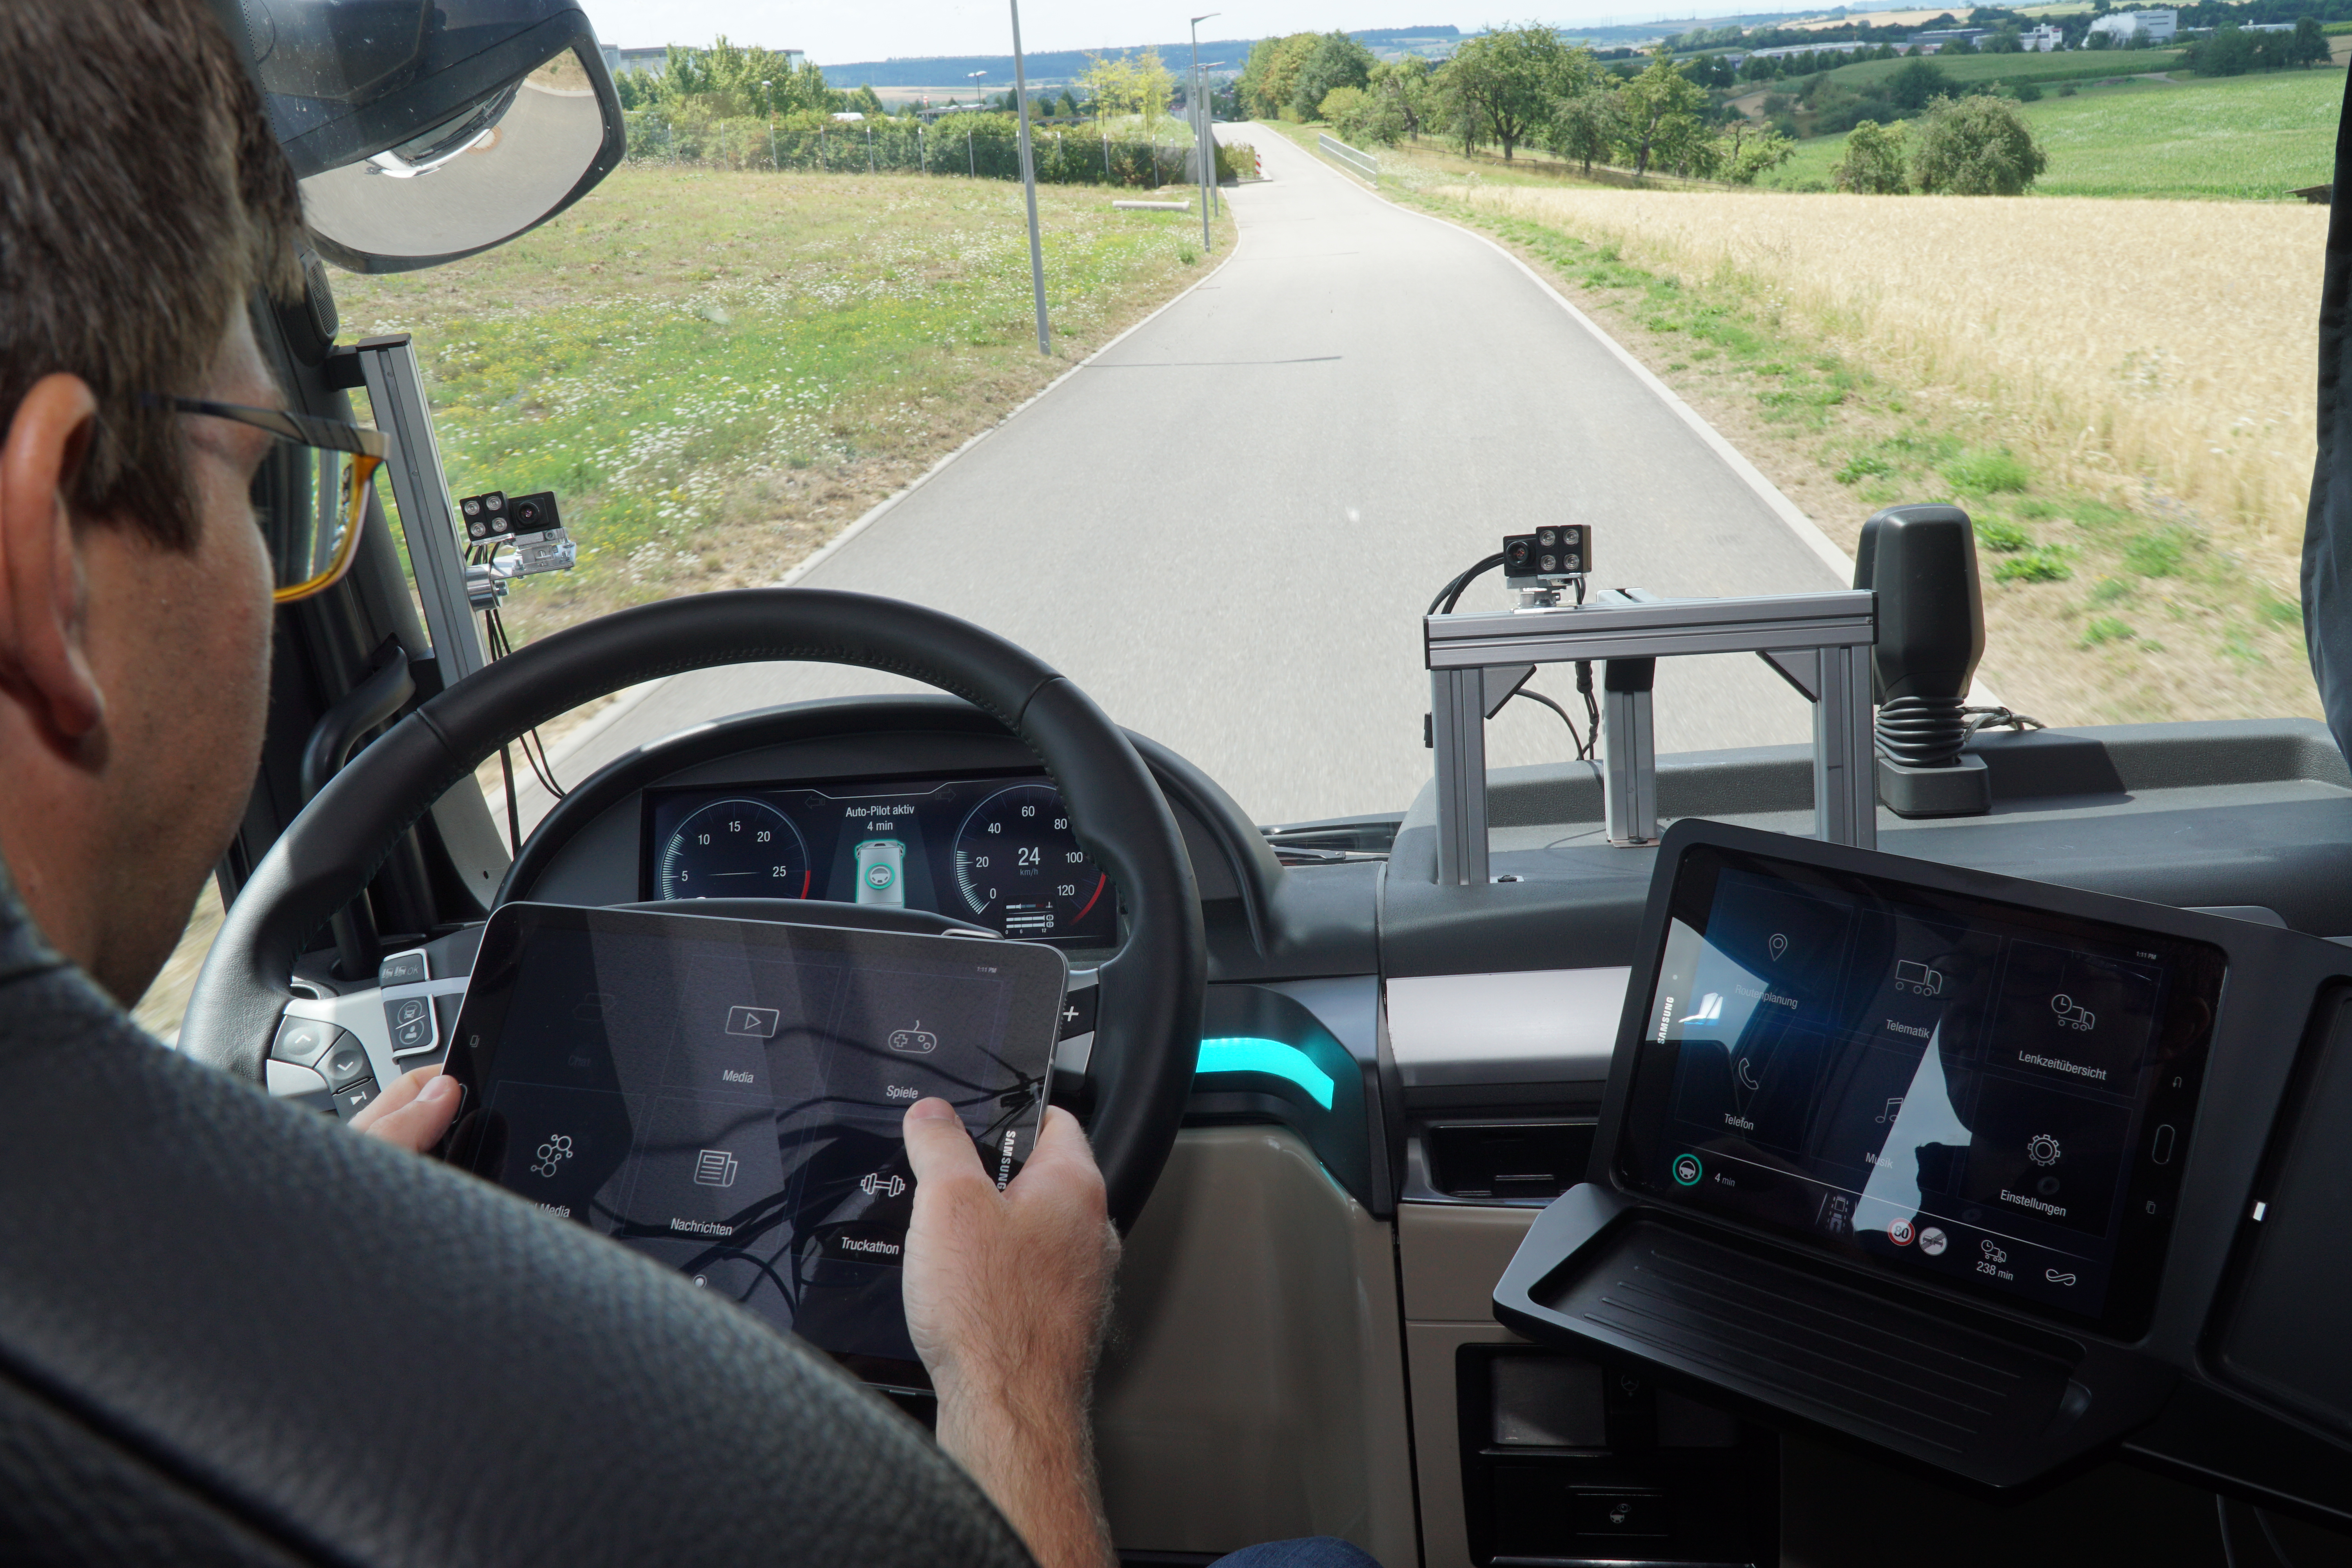 Compagno di viaggio virtuale aumenta la sicurezza degli autocarri sulle strade